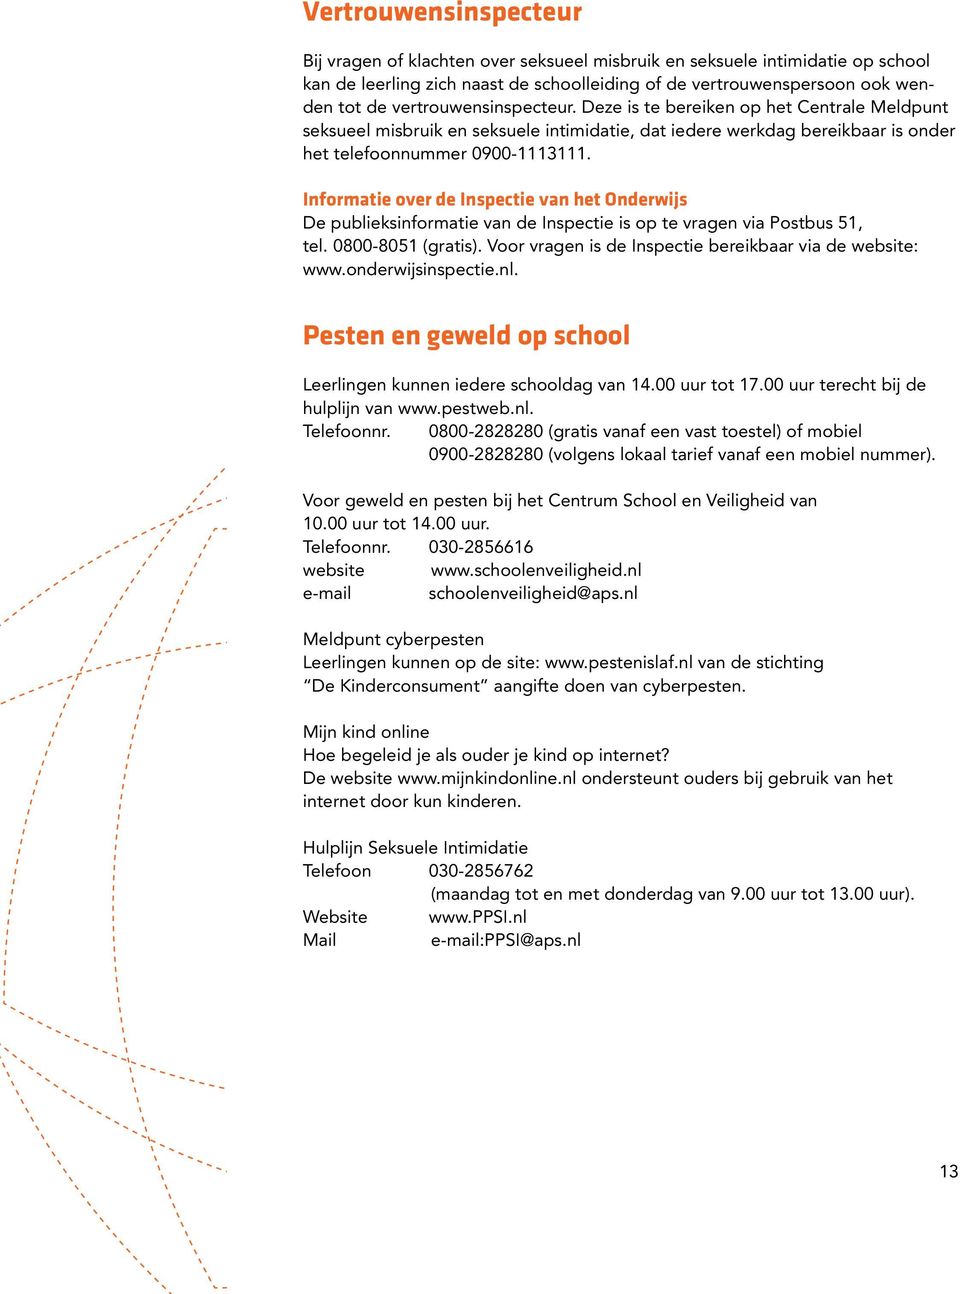 Informatie over de Inspectie van het Onderwijs De publieksinformatie van de Inspectie is op te vragen via Postbus 51, tel. 0800-8051 (gratis).